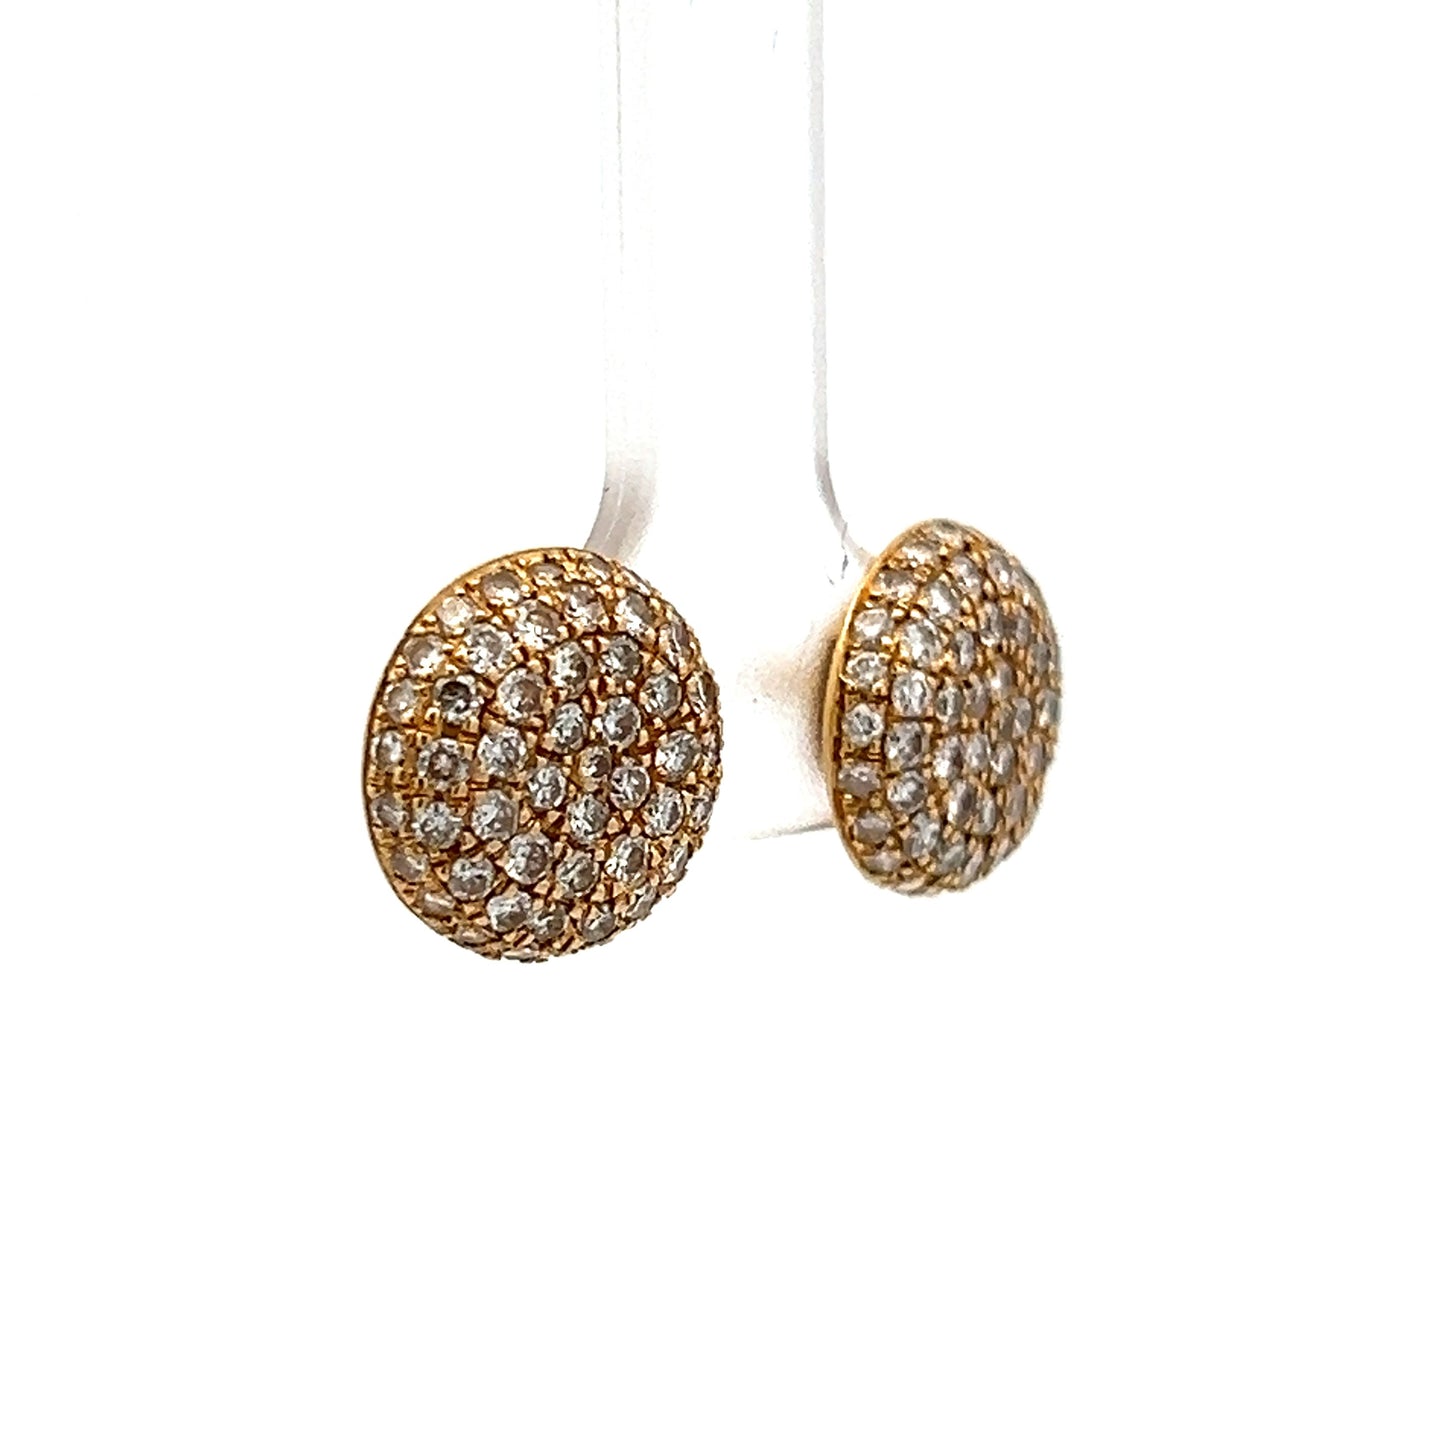 1.32 Diamond Stud Earrings in 18k Yellow Gold